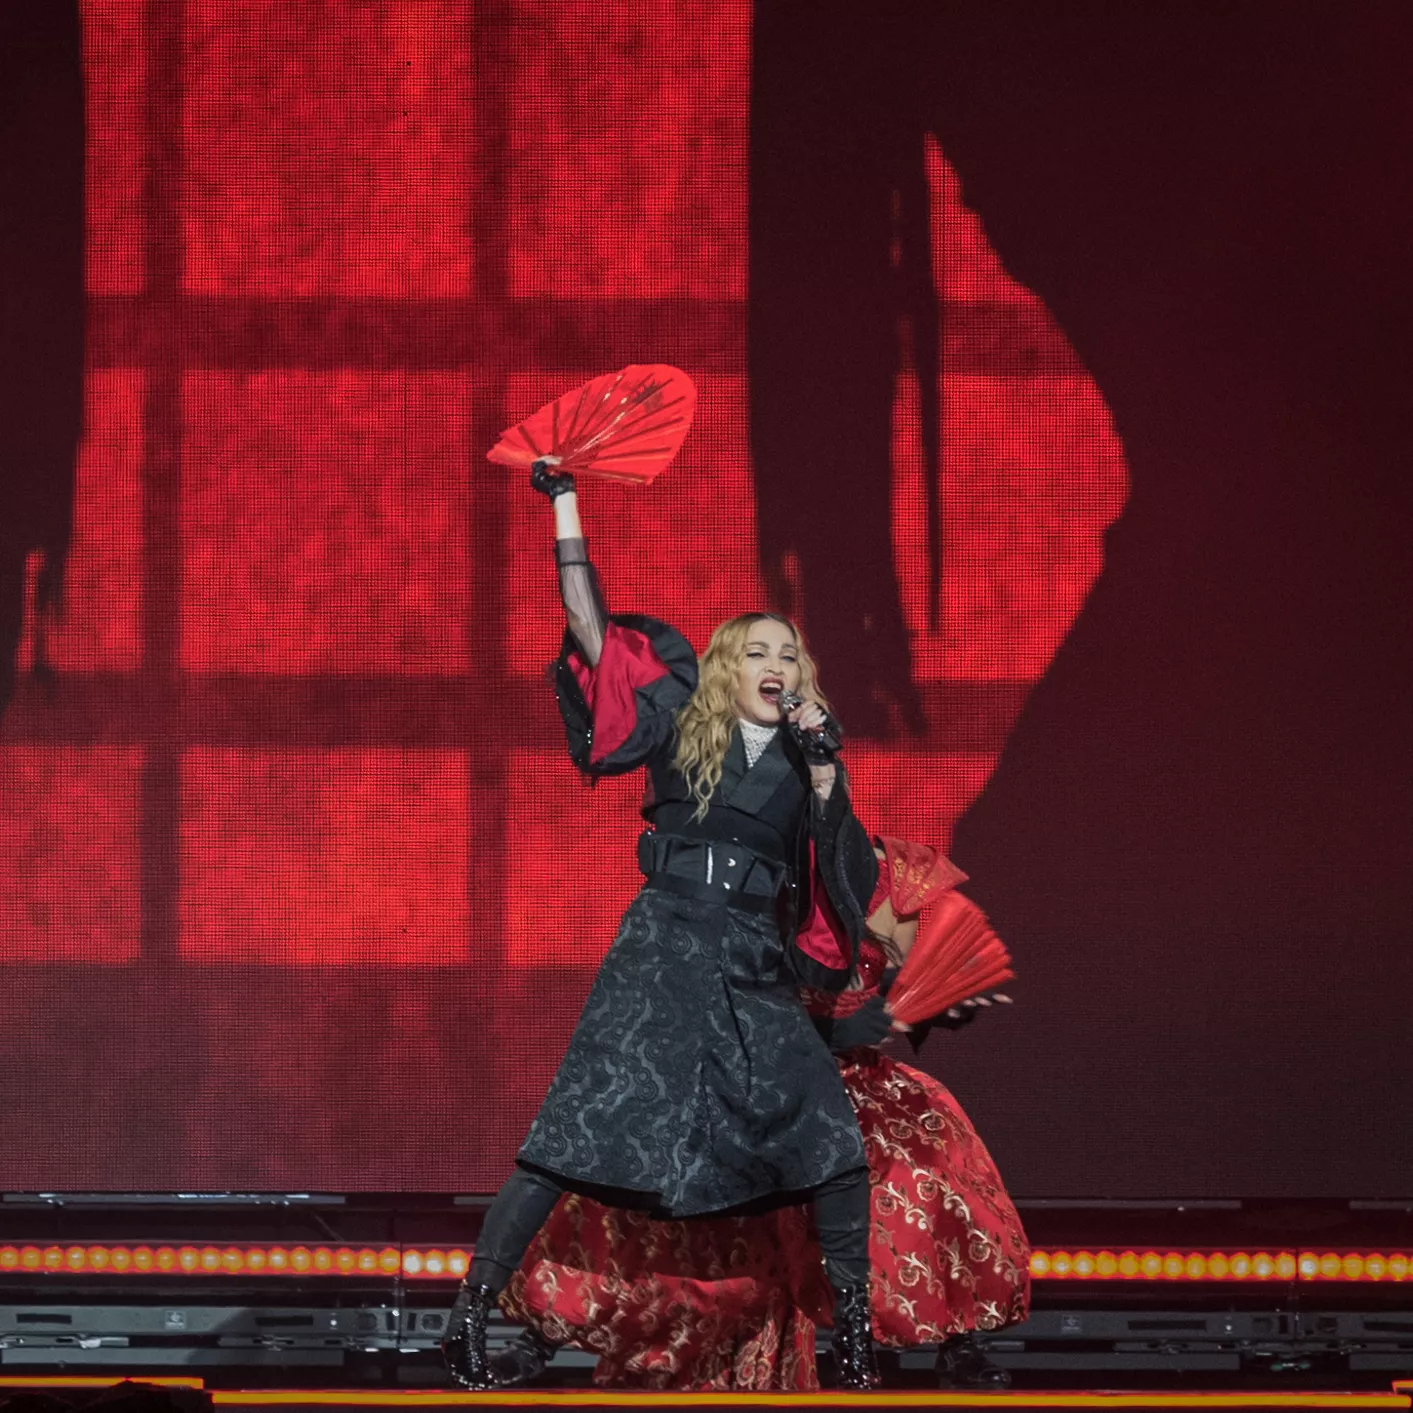 Madonna burde arresteres, mener republikansk toppolitiker